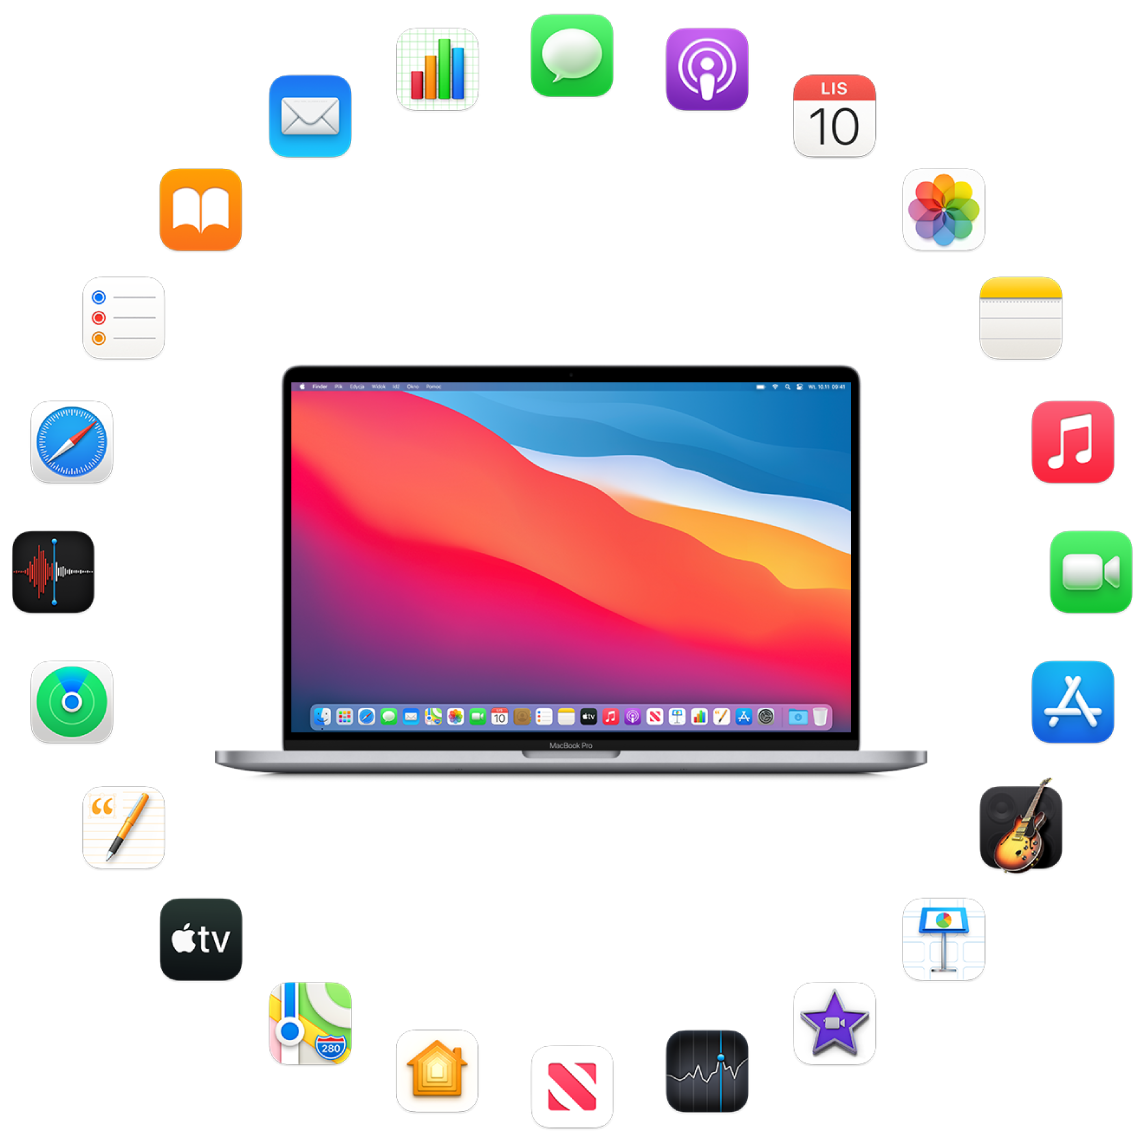 MacBook Pro otoczony ikonami dołączonych do niego aplikacji, opisanych w kolejnych sekcjach.